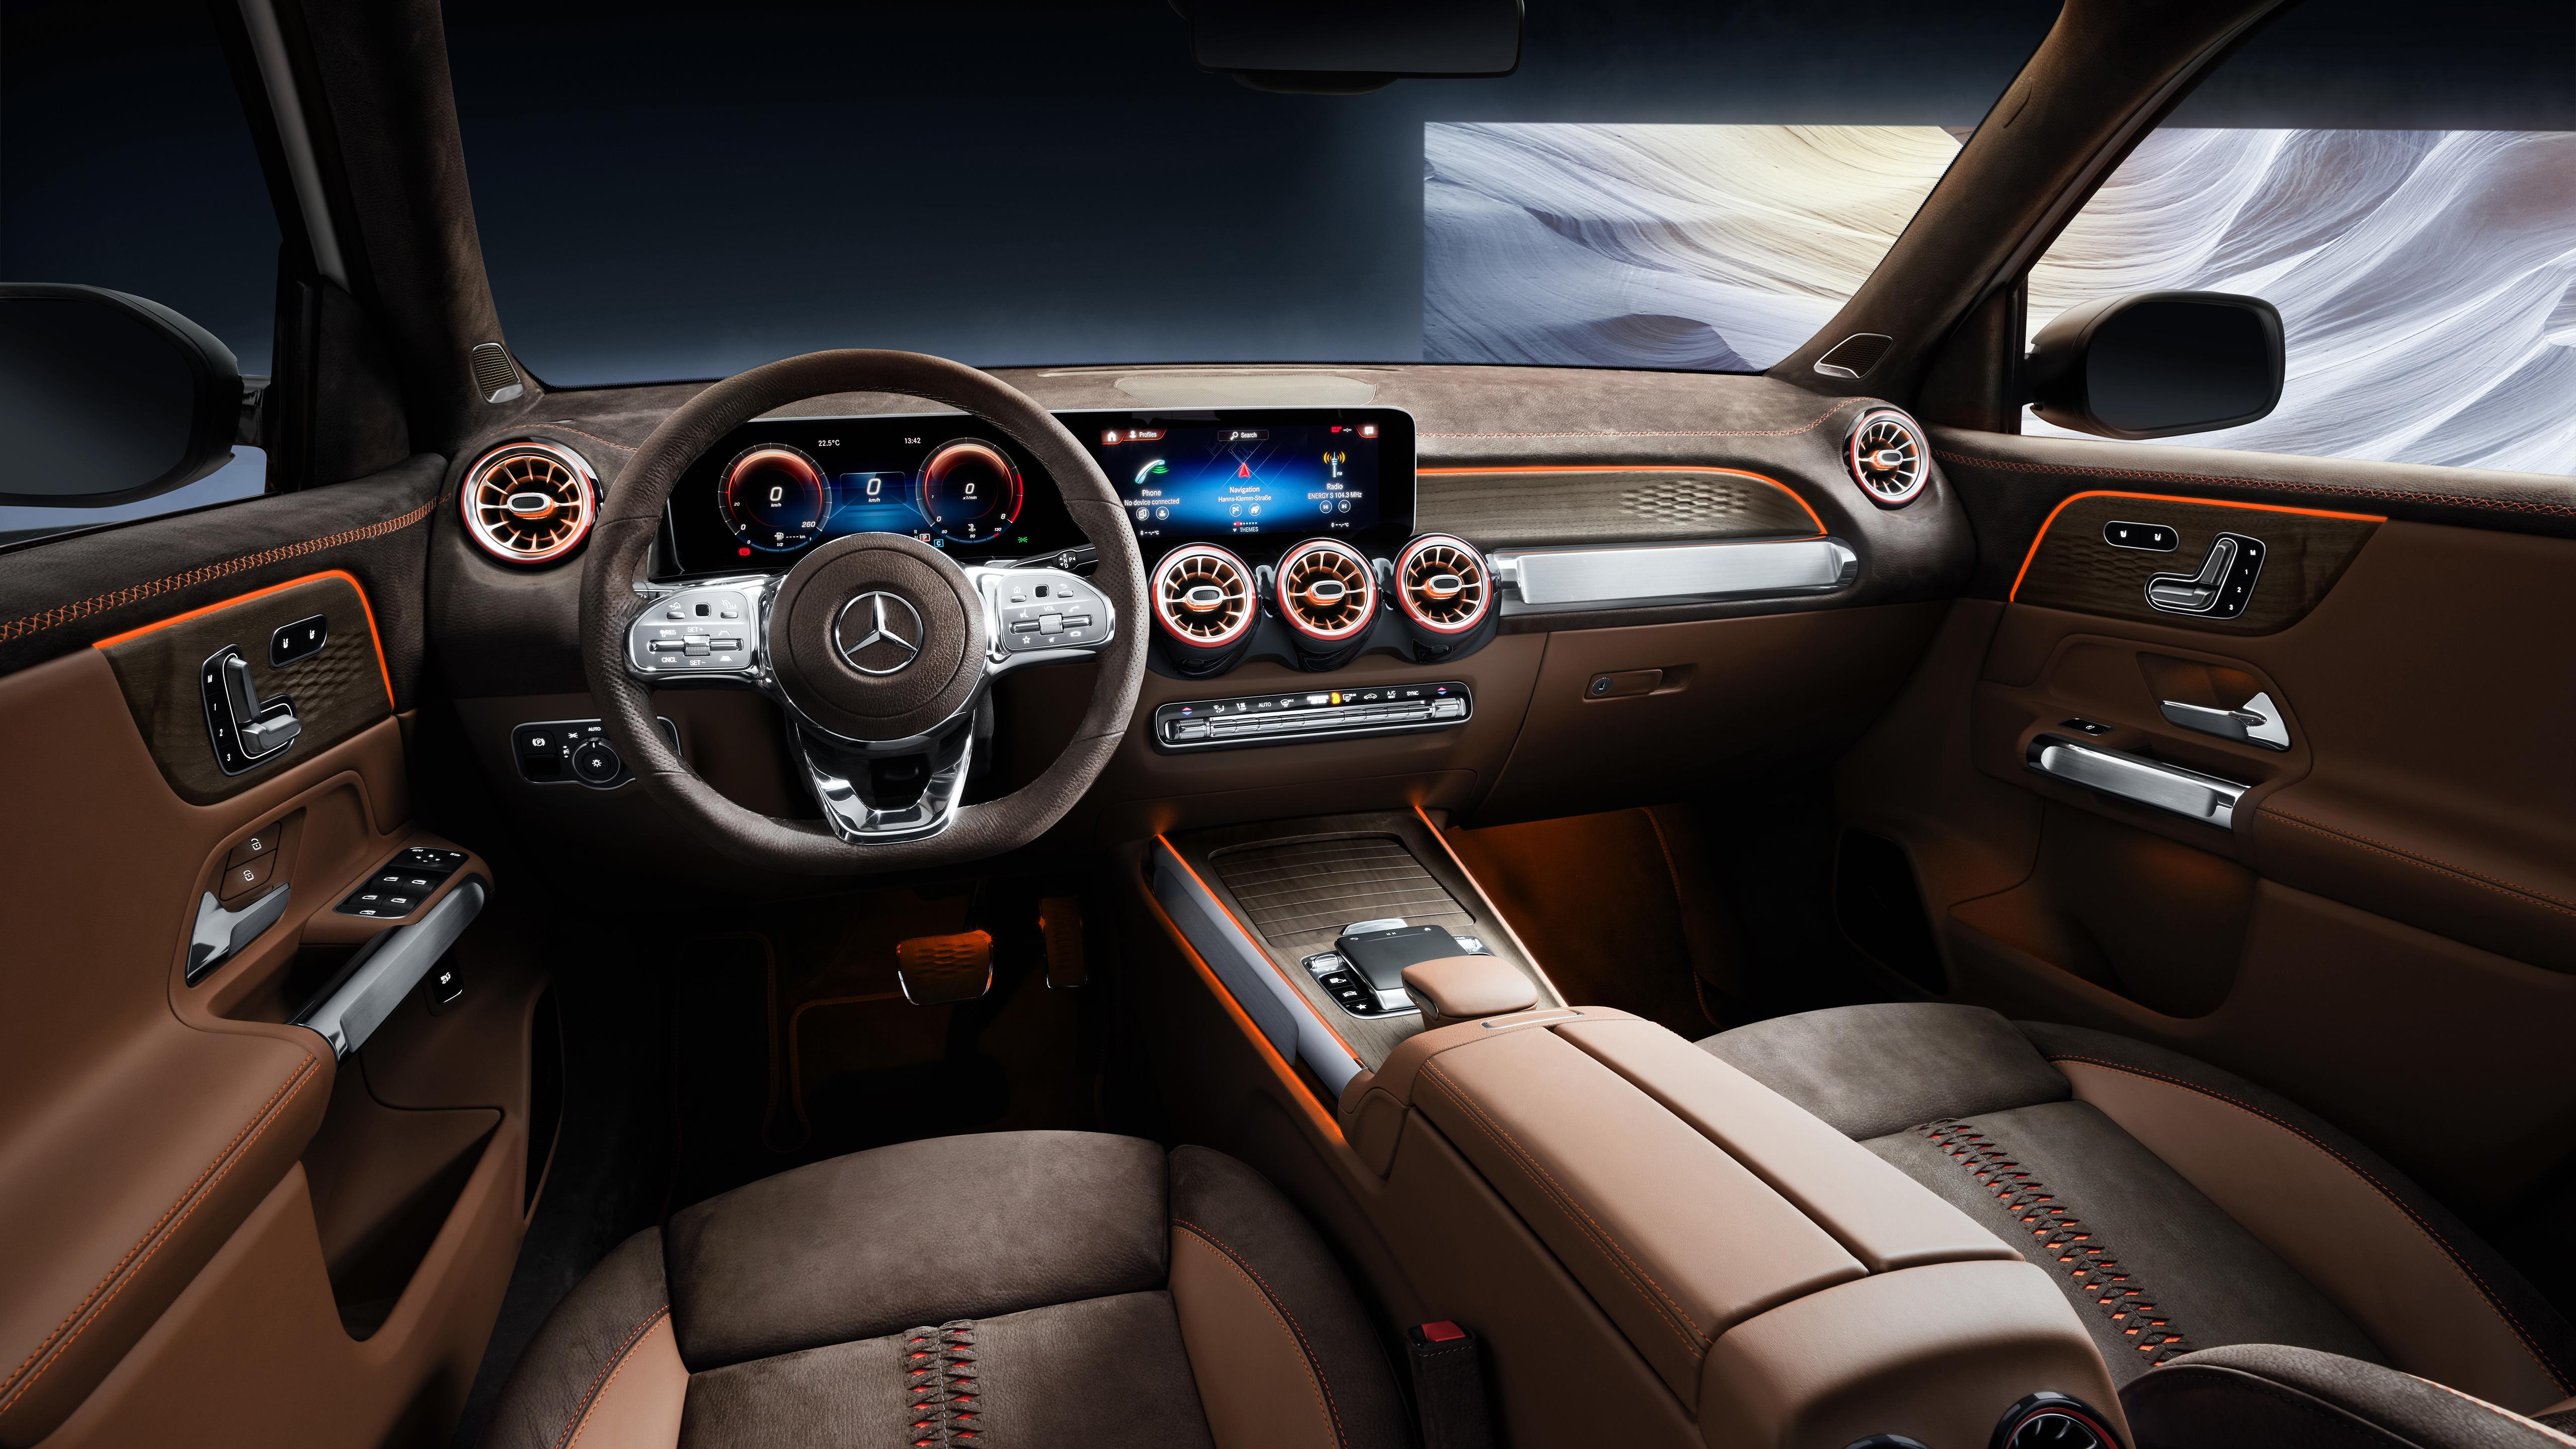 Mercedes Benz Concept GLB 2019 5K Interior Wallpaper. HD Car